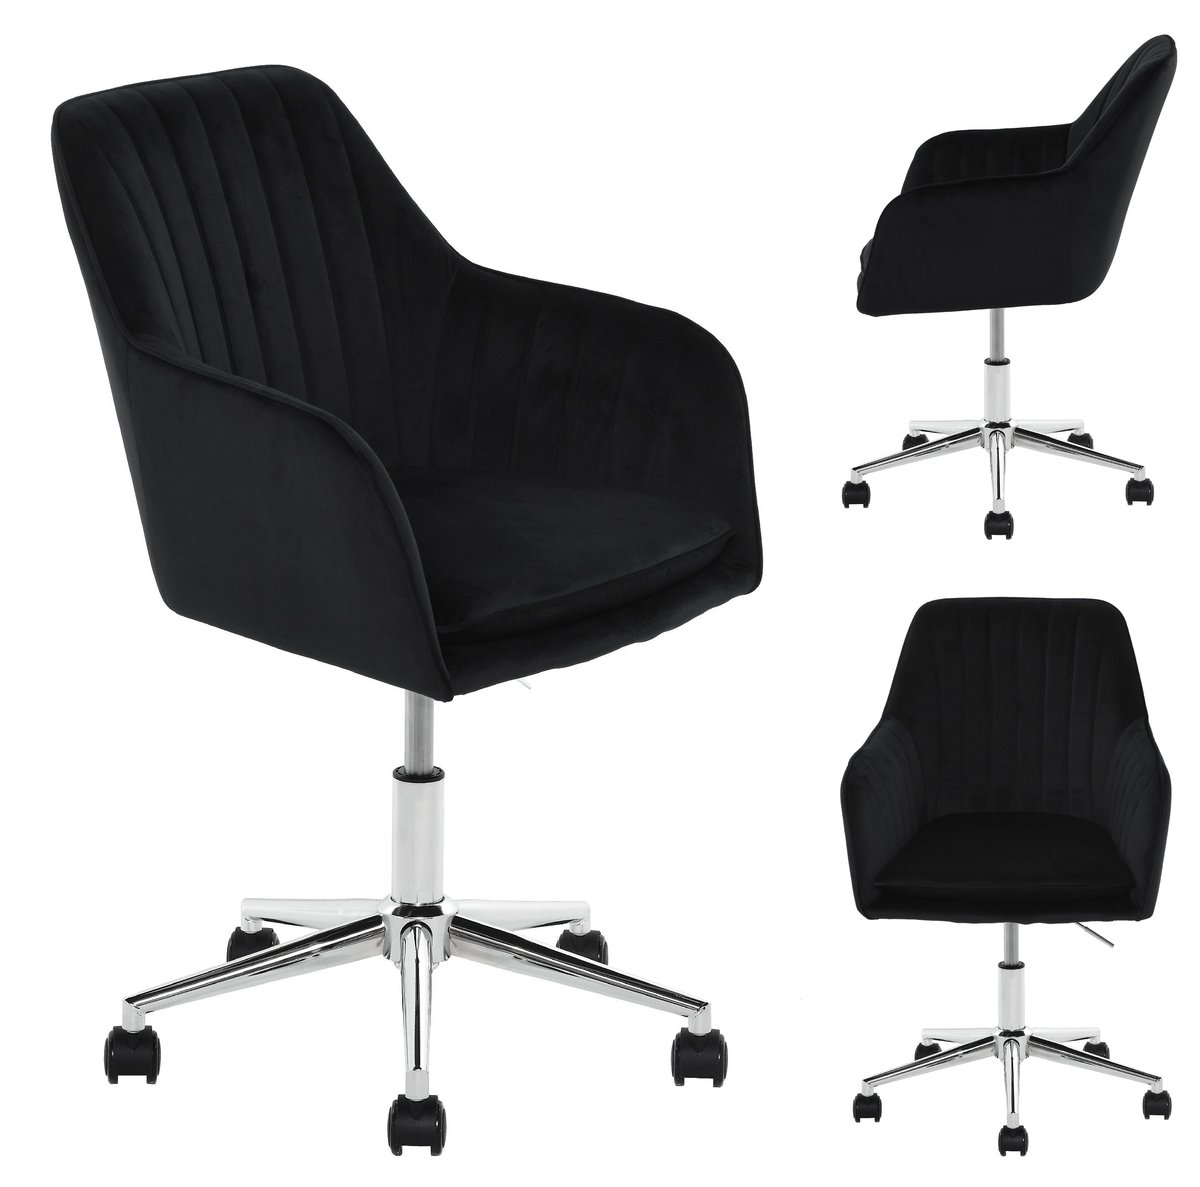 Fotel krzesło obrotowy biurowy welur podstawa chrom czarny